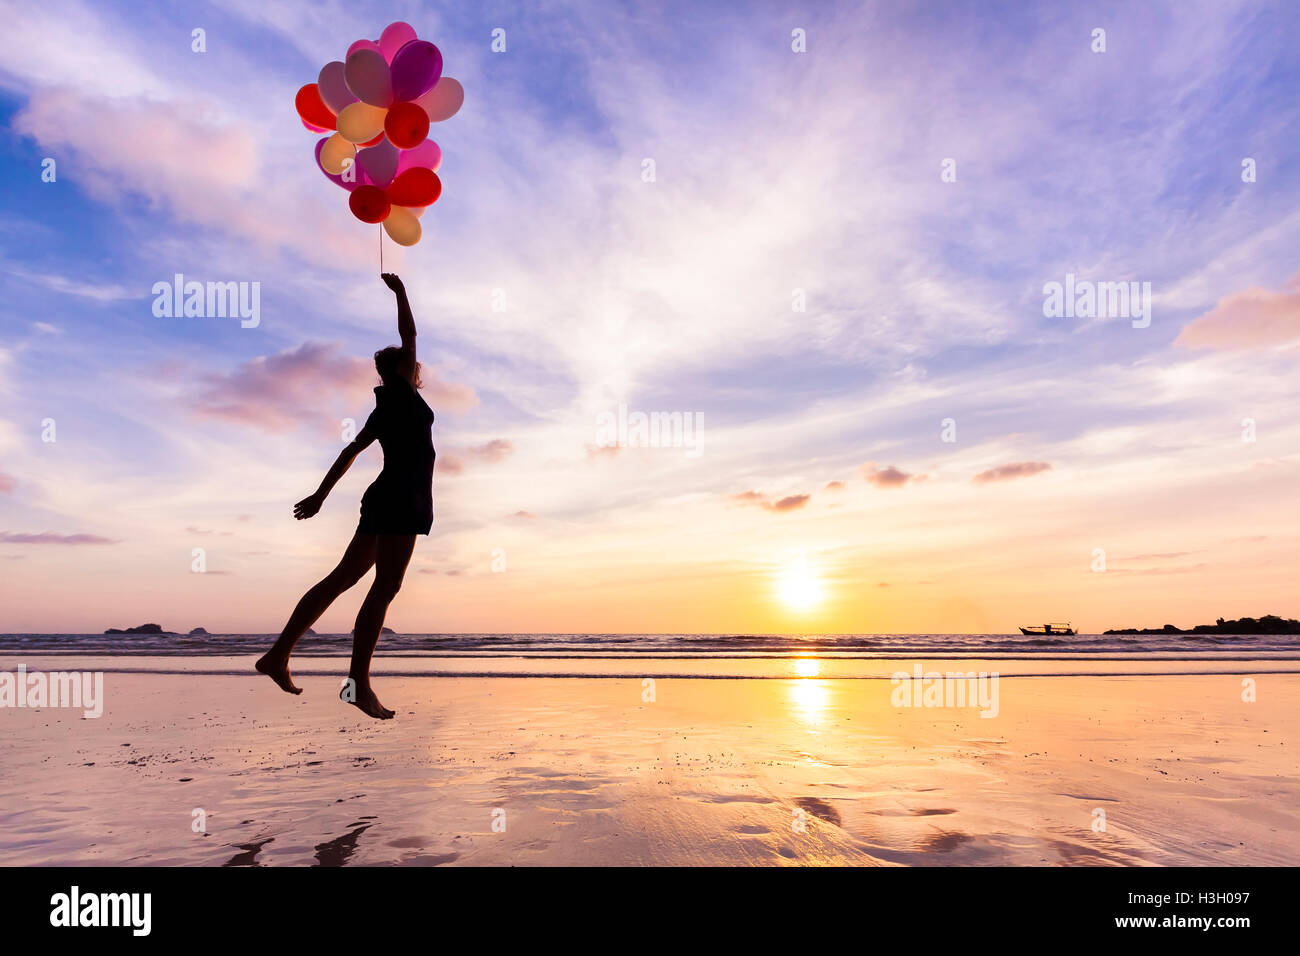 Femme dans un rêve heureux volant dans le ciel levé par ballons d'hélium Banque D'Images